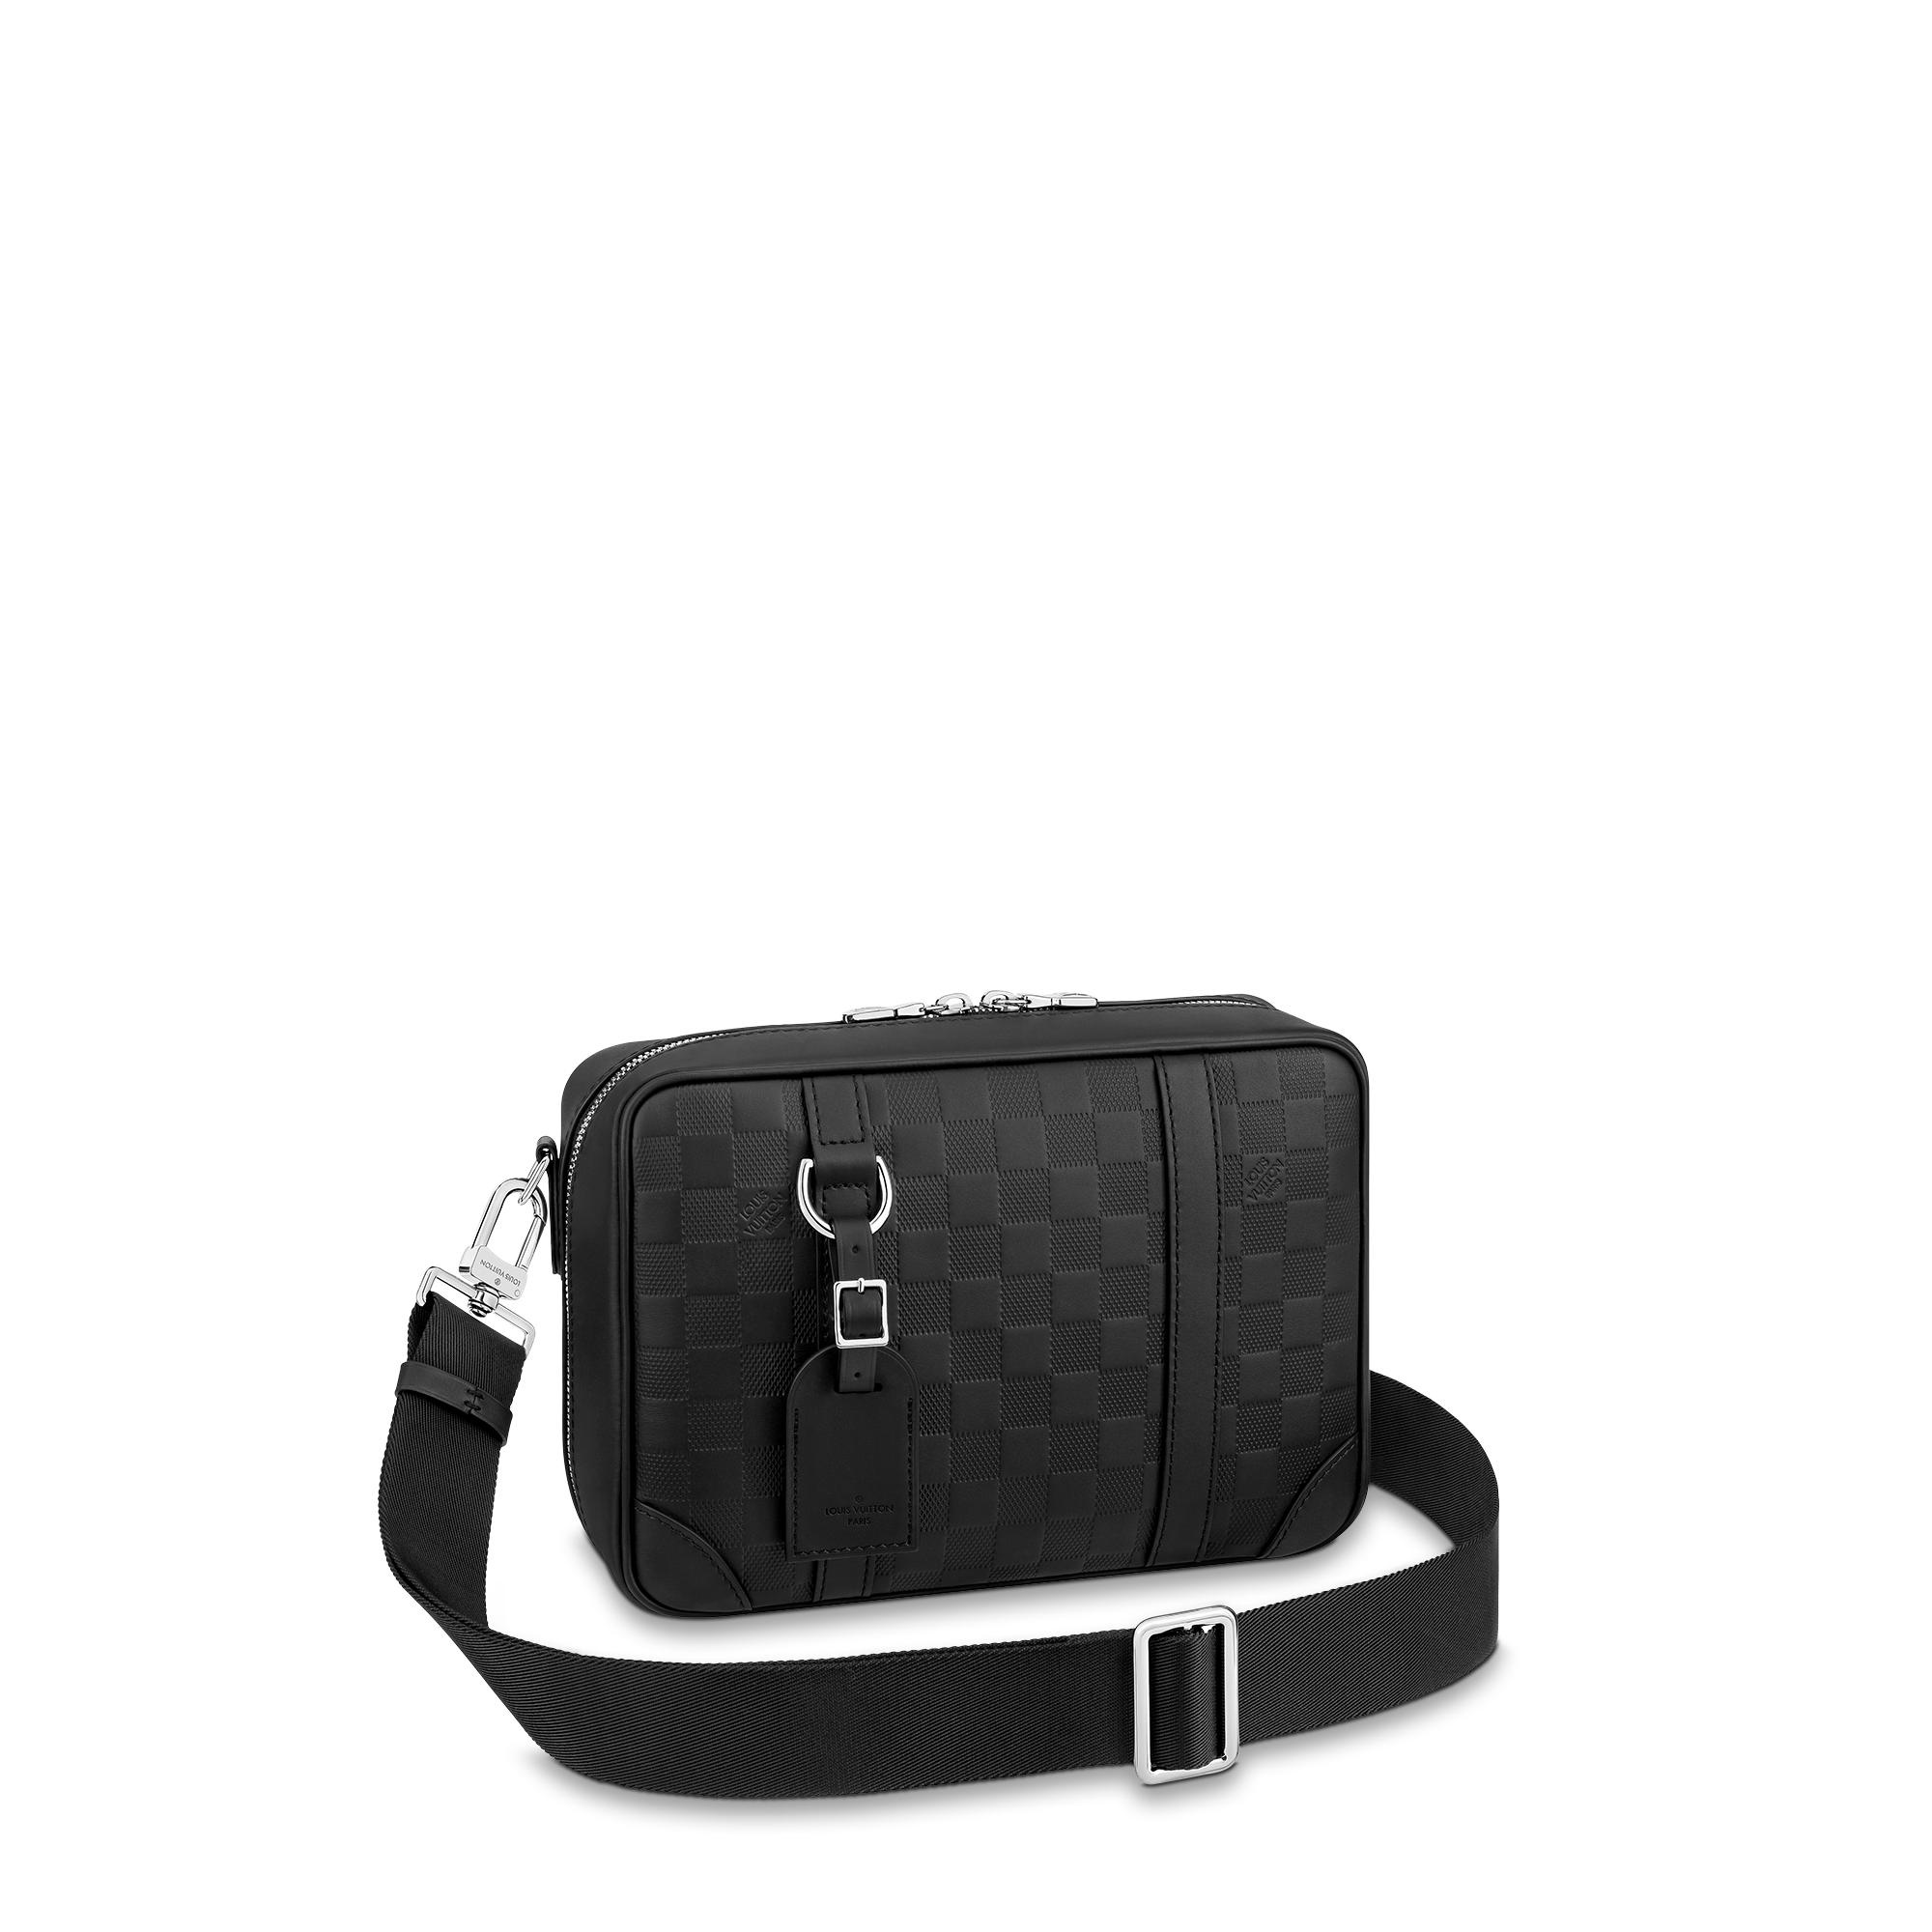 Louis Vuitton Sirius Messenger Bag Damier Infini Leather Black 2213192